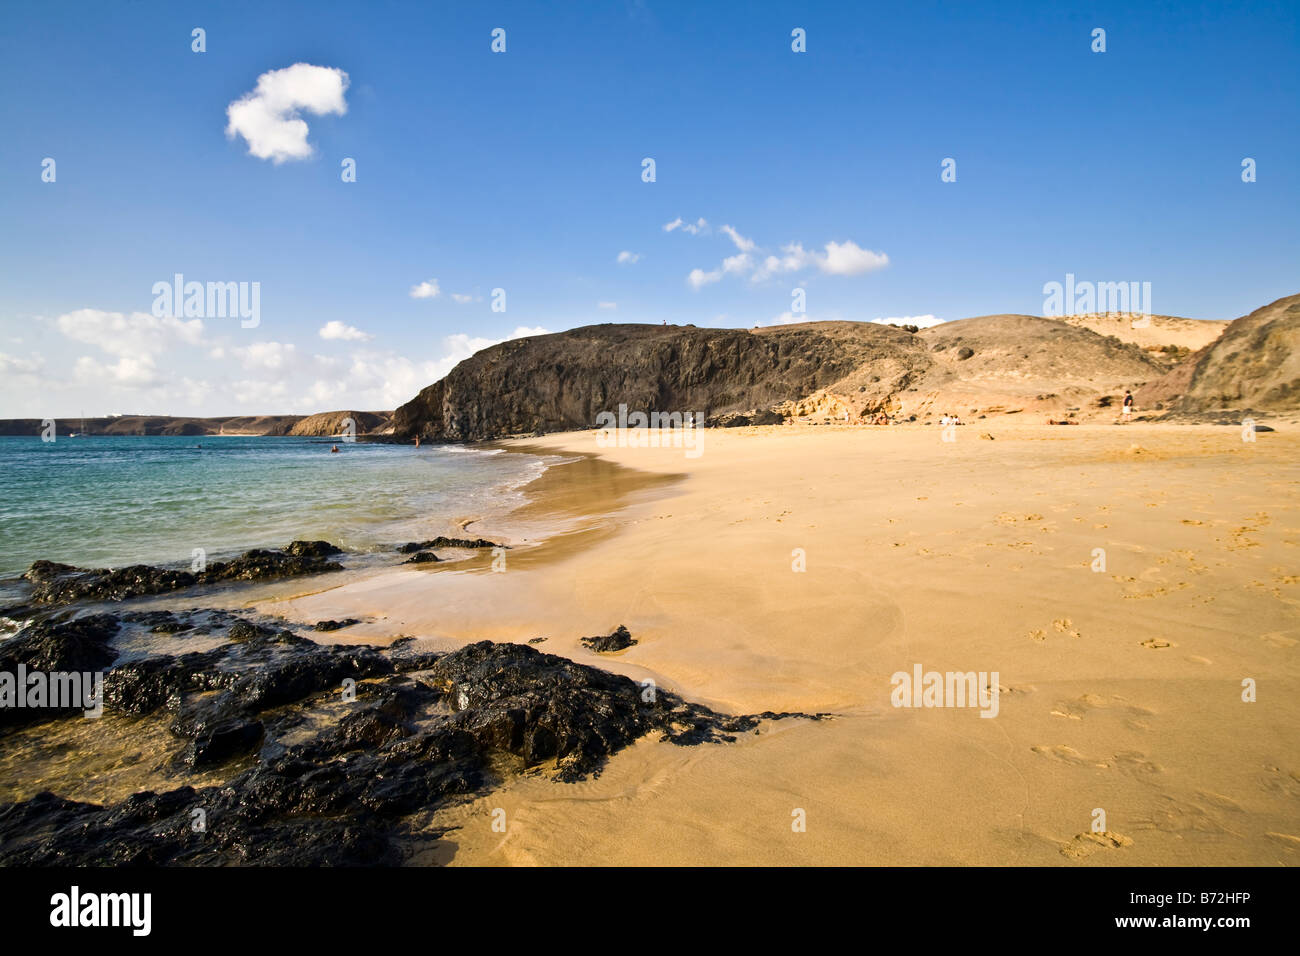 Playas de Papagayo, Lanzarote, Canary Islands Stock Photo